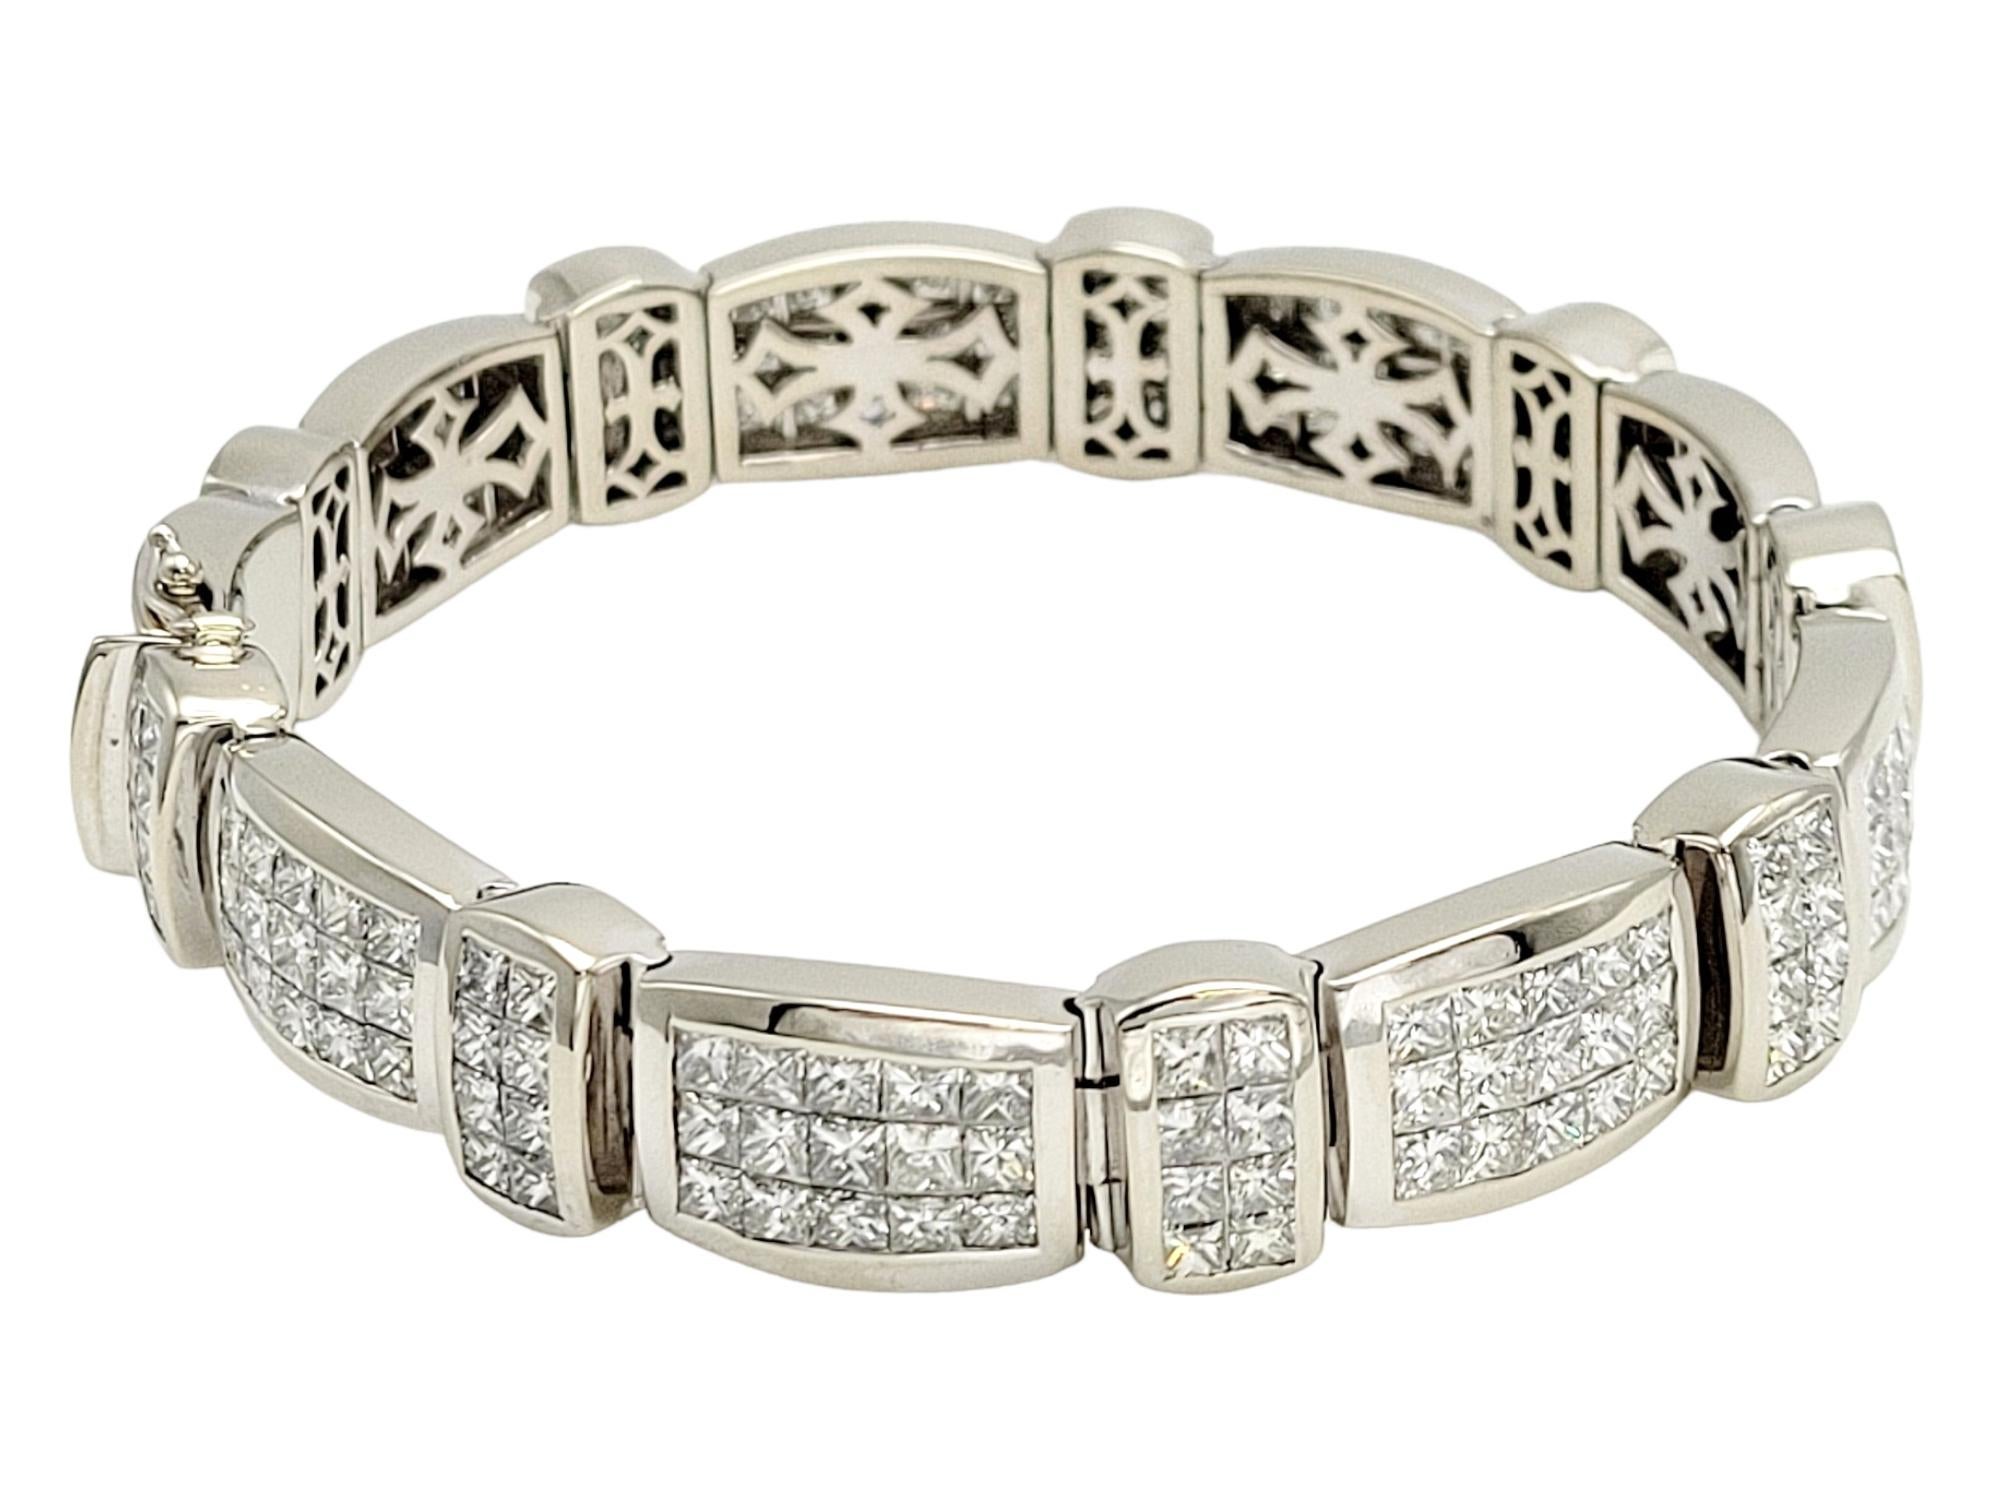 Dieses exquisite Gliederarmband mit 30,93 Karat unsichtbar gefassten Diamanten im Prinzessinnenschliff ist ein Wunderwerk der Juwelierskunst. Dieses prächtige Schmuckstück ist mit 207 funkelnden Diamanten im Prinzess-Schliff besetzt, die sich